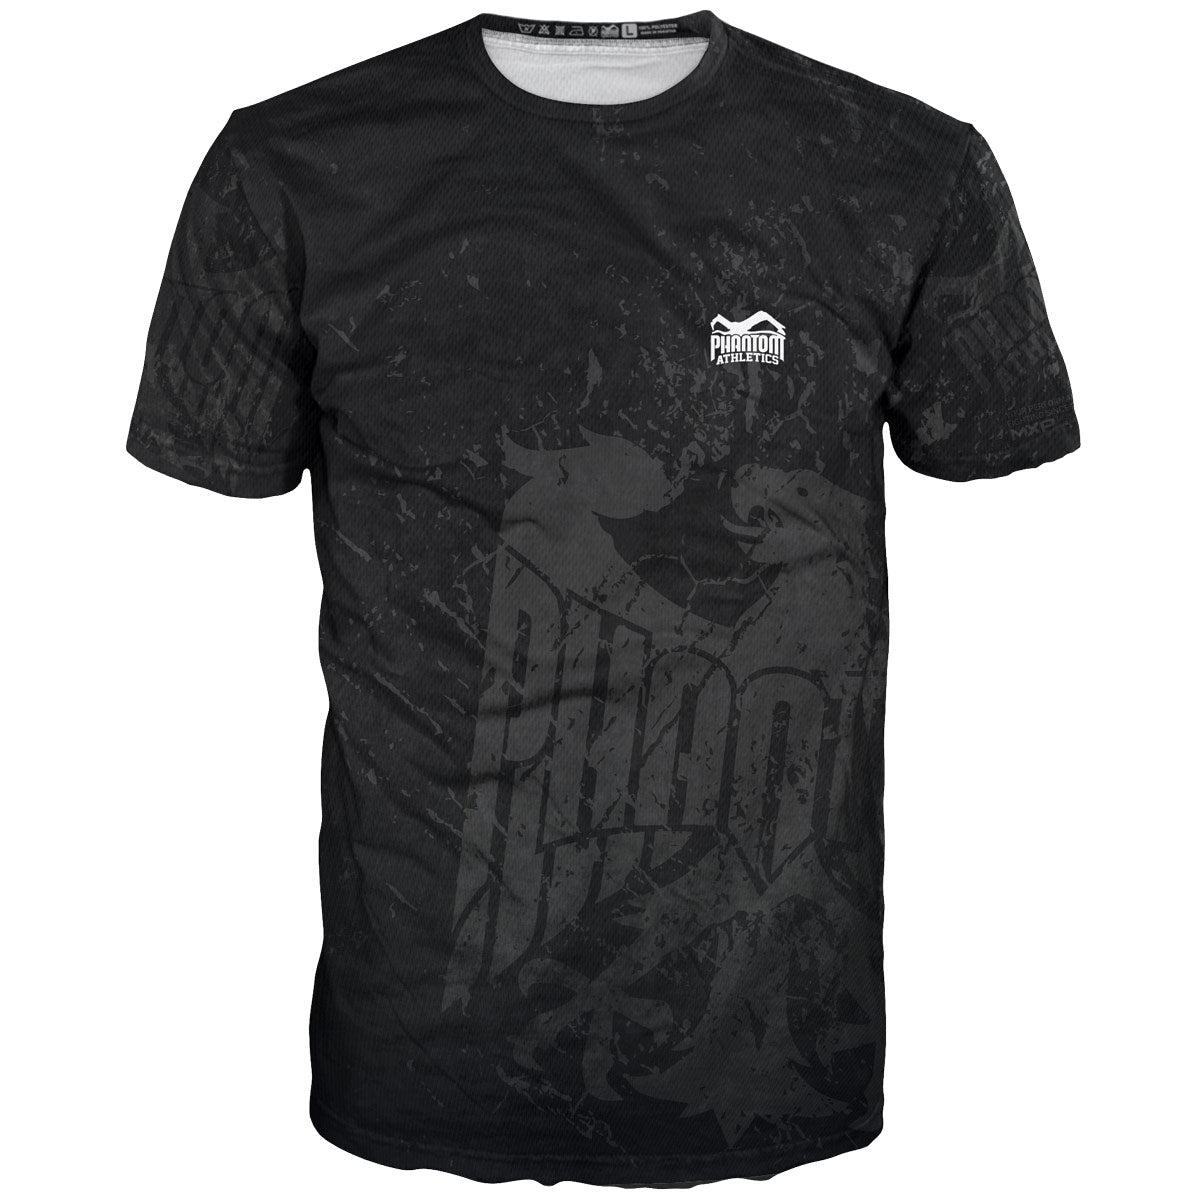 Phantom EVO träningskampskjorta i Team Germany-design. Med tysk örn och bokstäver "Never Back Down". Perfekt för dina kampsporter, som MMA, Muay Thai, brottning, BJJ eller kickboxning.